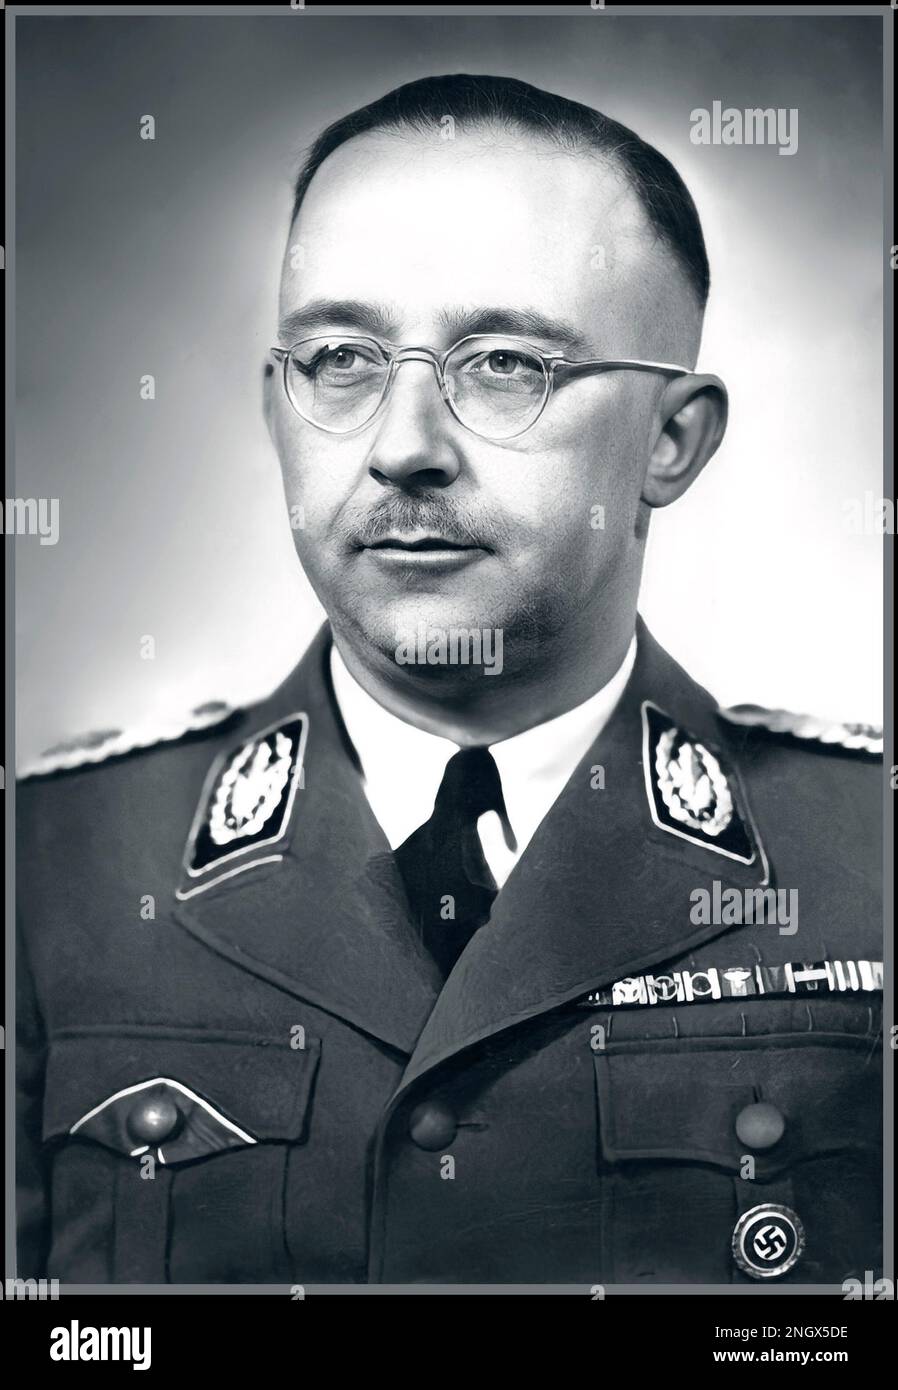 HIMMLER NAZI Heinrich Luitpold Himmler WW2 Nazi. War Reichsführer des Schutzpersonals und führendes Mitglied der Nazi-Partei Deutschlands. Himmler war einer der mächtigsten Männer in Nazideutschland und der Hauptarchitekt des Holocaust. Datum 1942 Er beging Selbstmord, bevor er wegen Verbrechen gegen die Menschlichkeit angeklagt wurde. Stockfoto